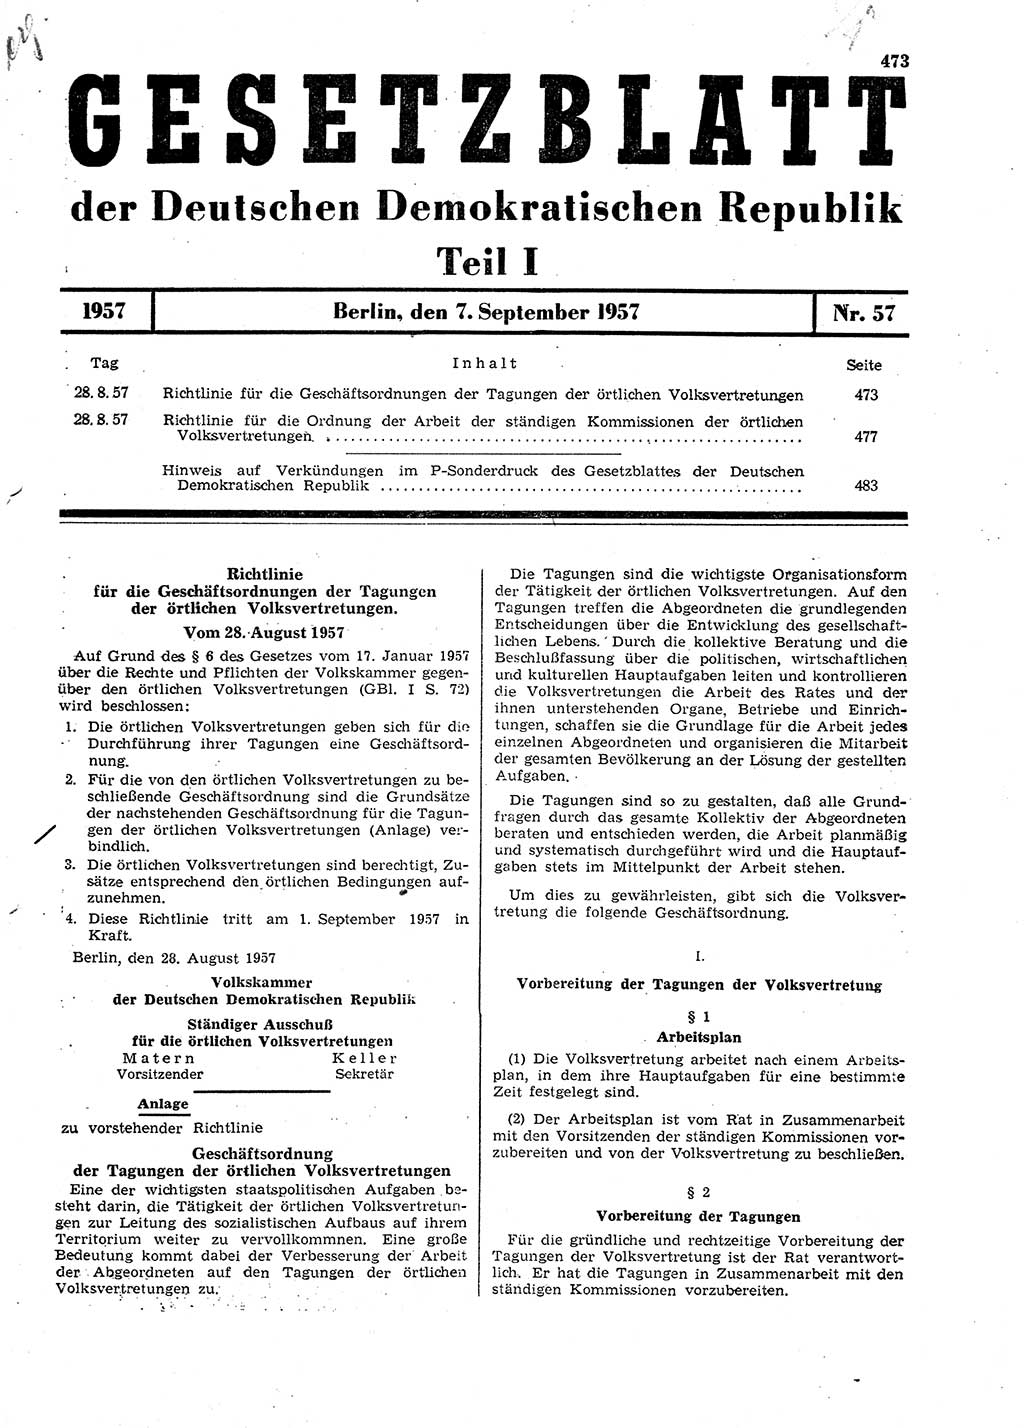 Gesetzblatt (GBl.) der Deutschen Demokratischen Republik (DDR) Teil Ⅰ 1957, Seite 473 (GBl. DDR Ⅰ 1957, S. 473)